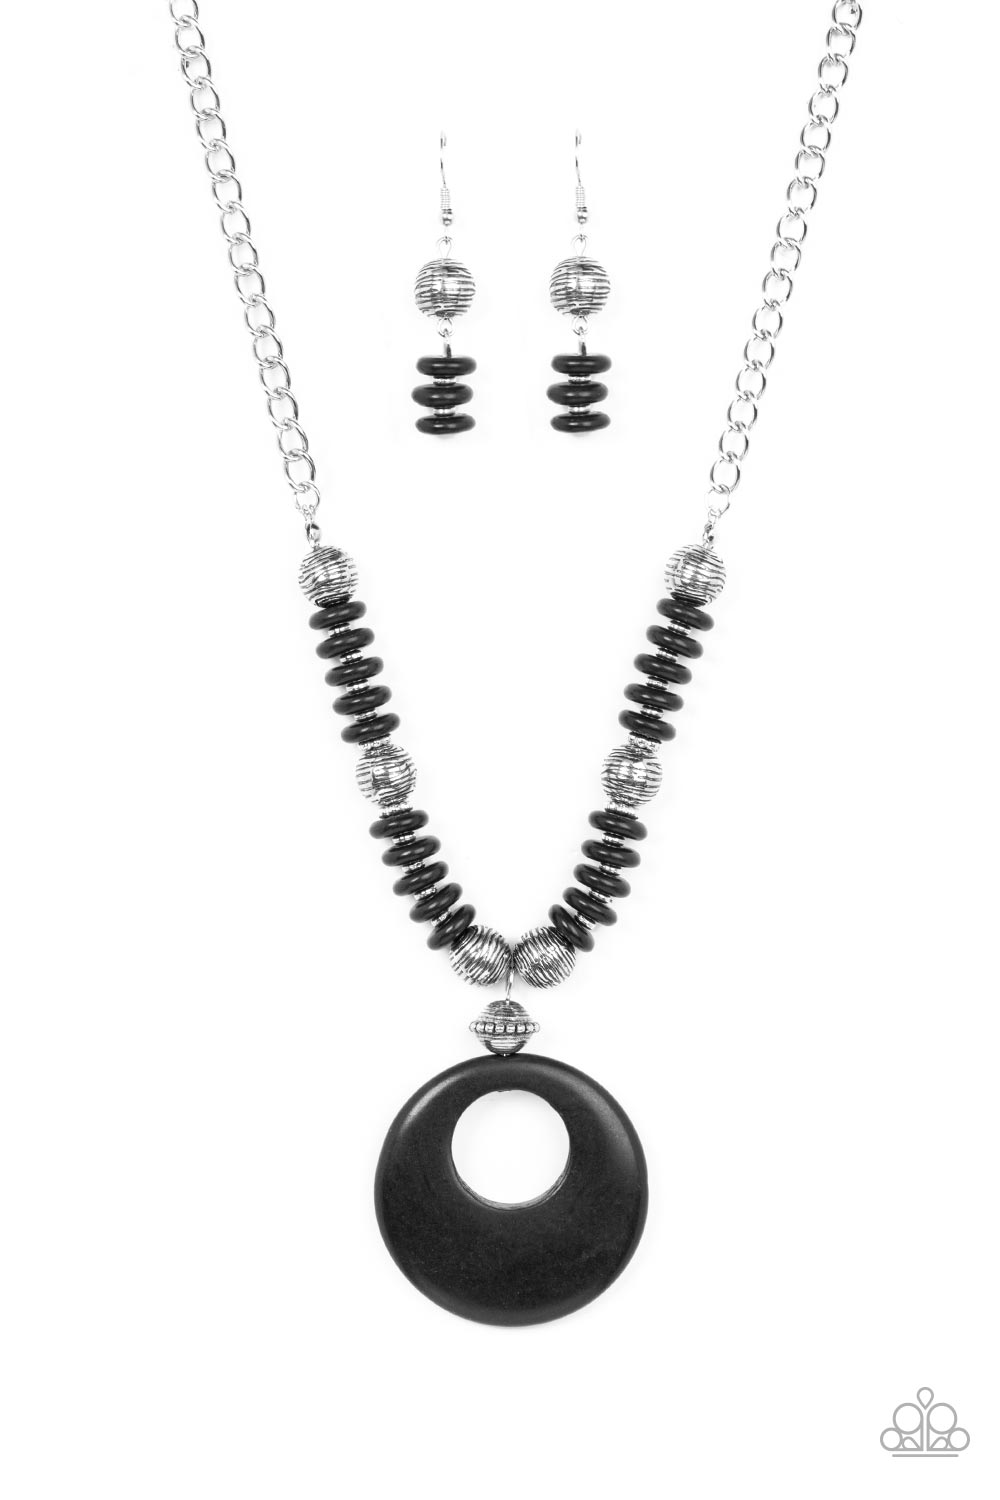 Oasis Goddess Black Necklace